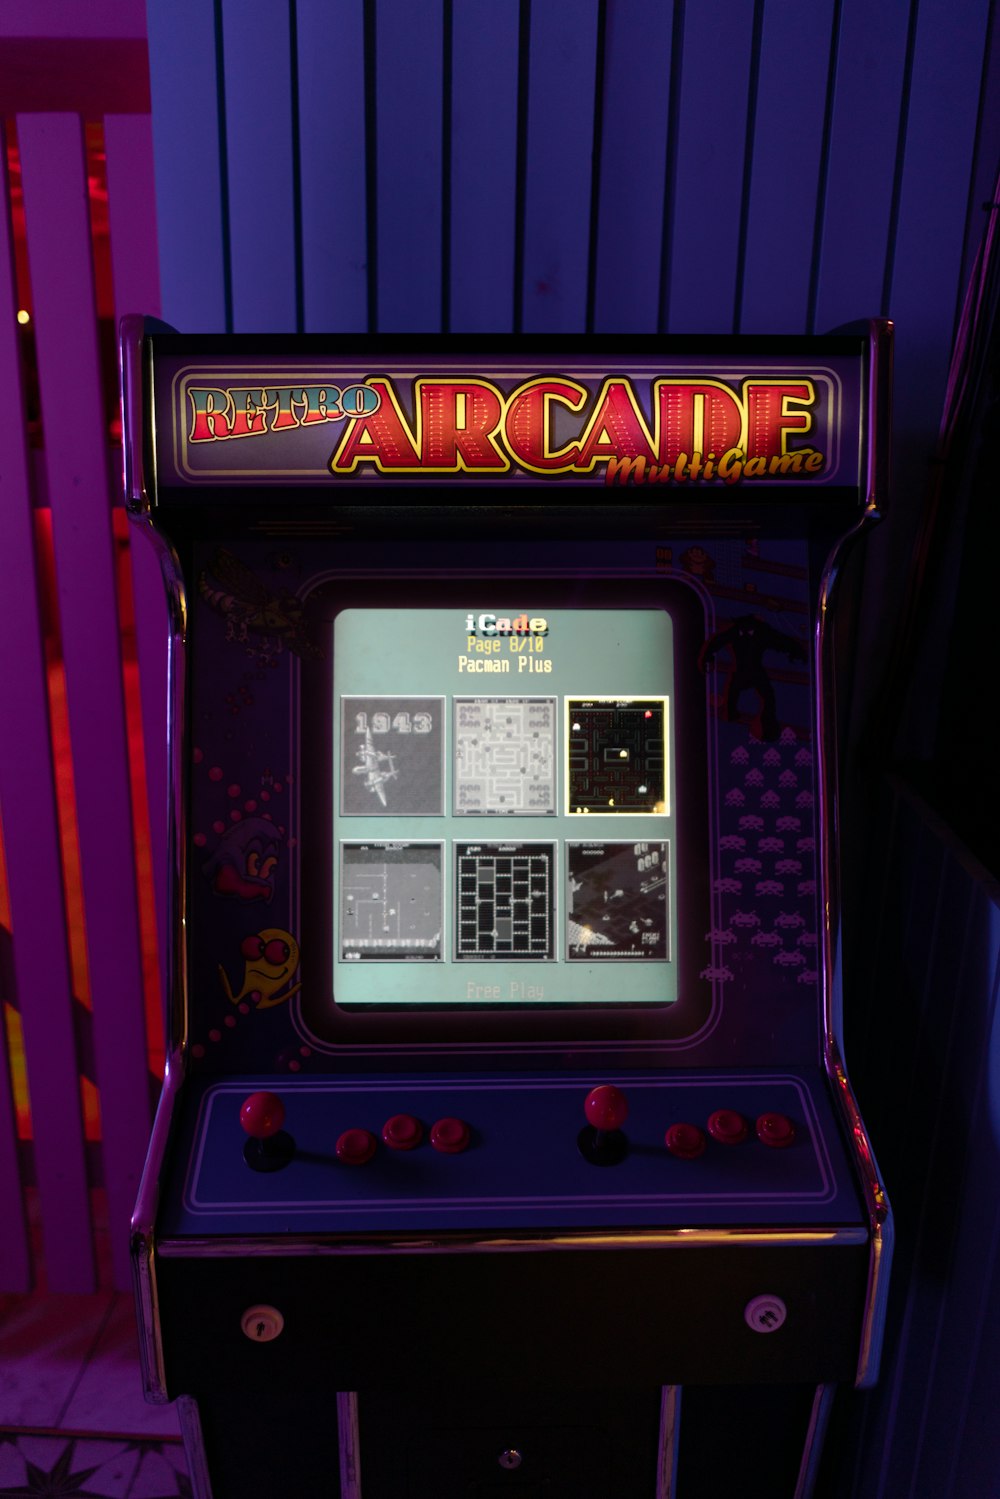 Chắc hẳn bạn đã từng chơi qua một trận arcade đầy kịch tính và độc đáo phải không? Đến lượt bạn khám phá những ảnh arcade đẹp mắt với những nhân vật hoạt hình ngộ nghĩnh và đầy màu sắc. Hãy nhấn play ngay để khám phá!